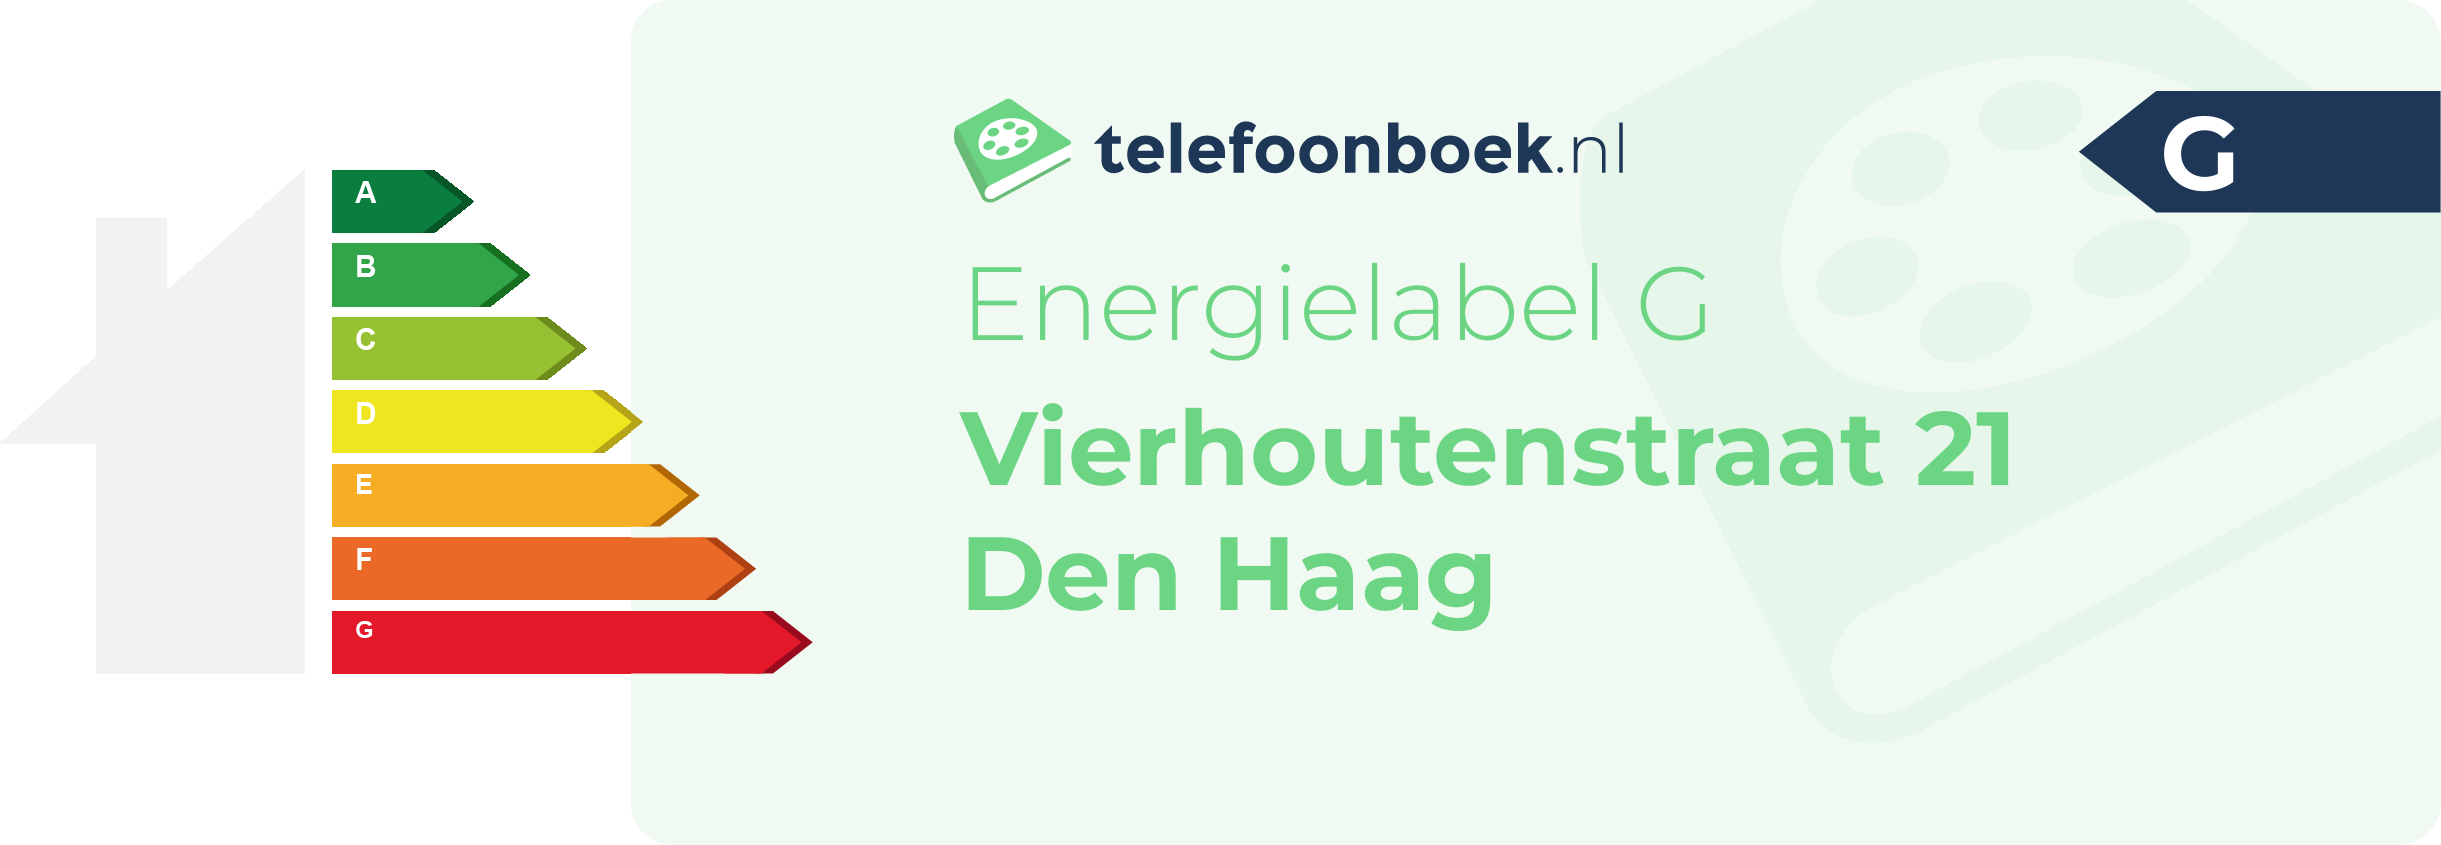 Energielabel Vierhoutenstraat 21 Den Haag